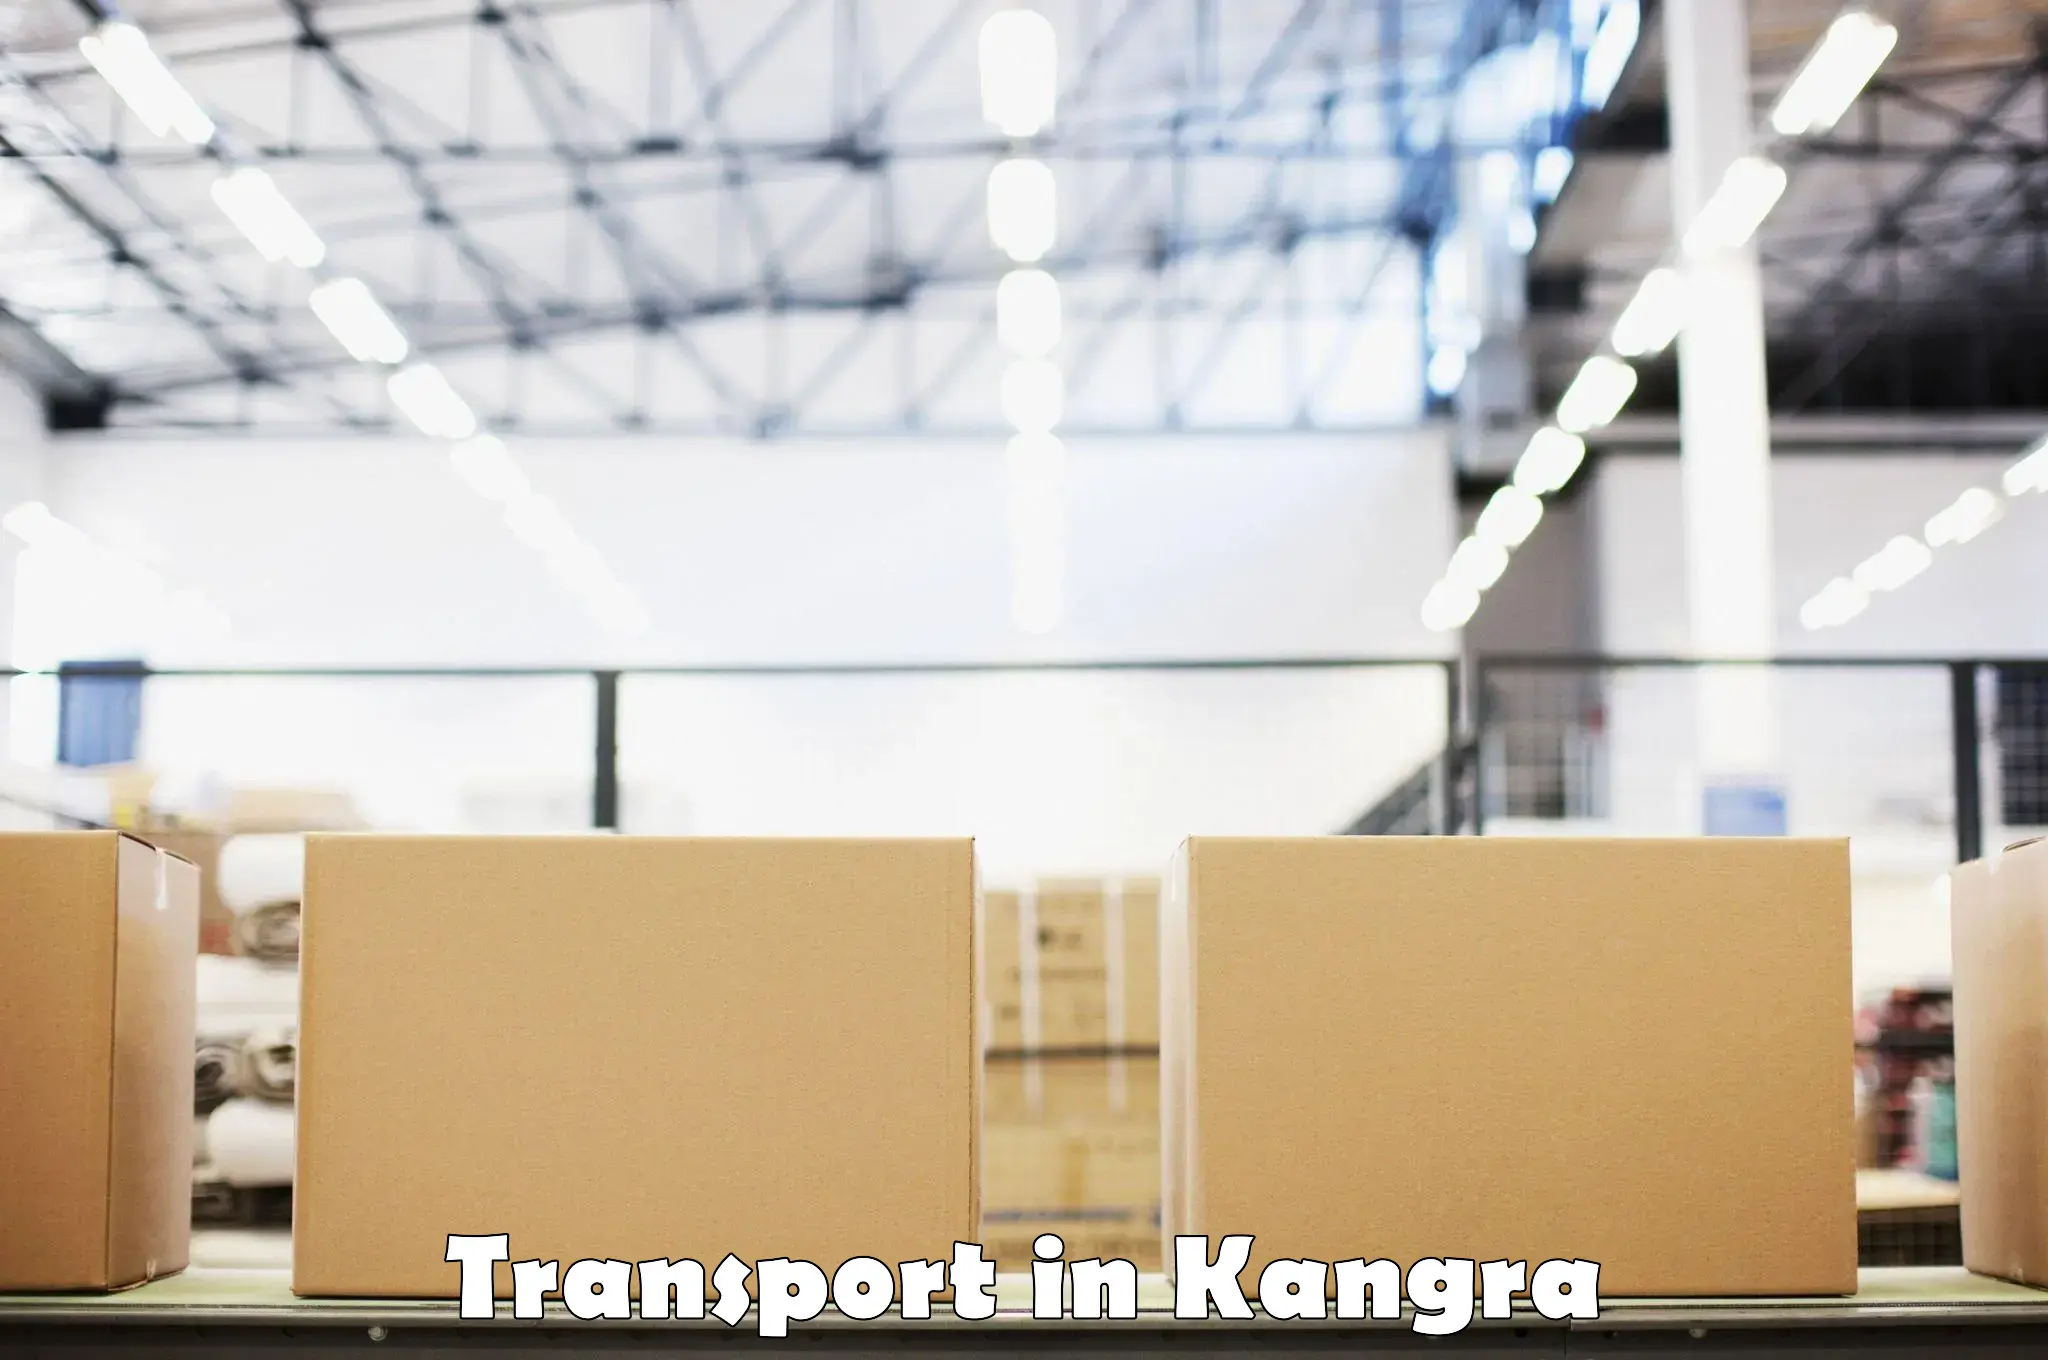 Land transport services in Kangra